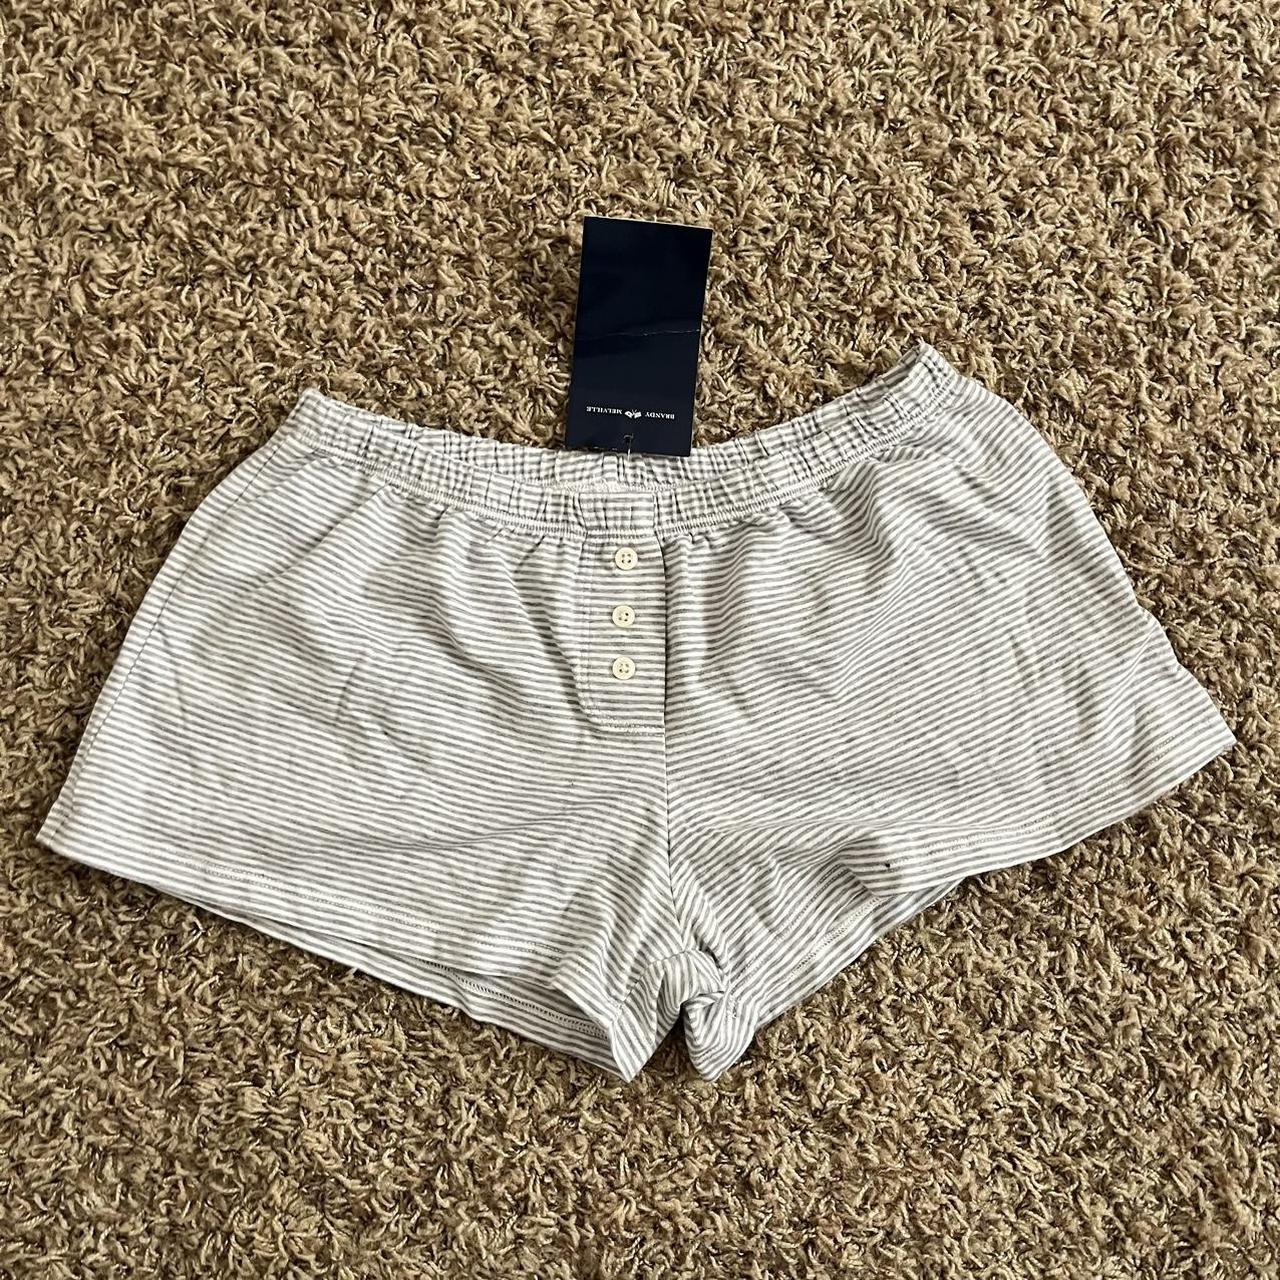 Brandy Melville Striped Pajama Shorts ♡ one size... - Depop